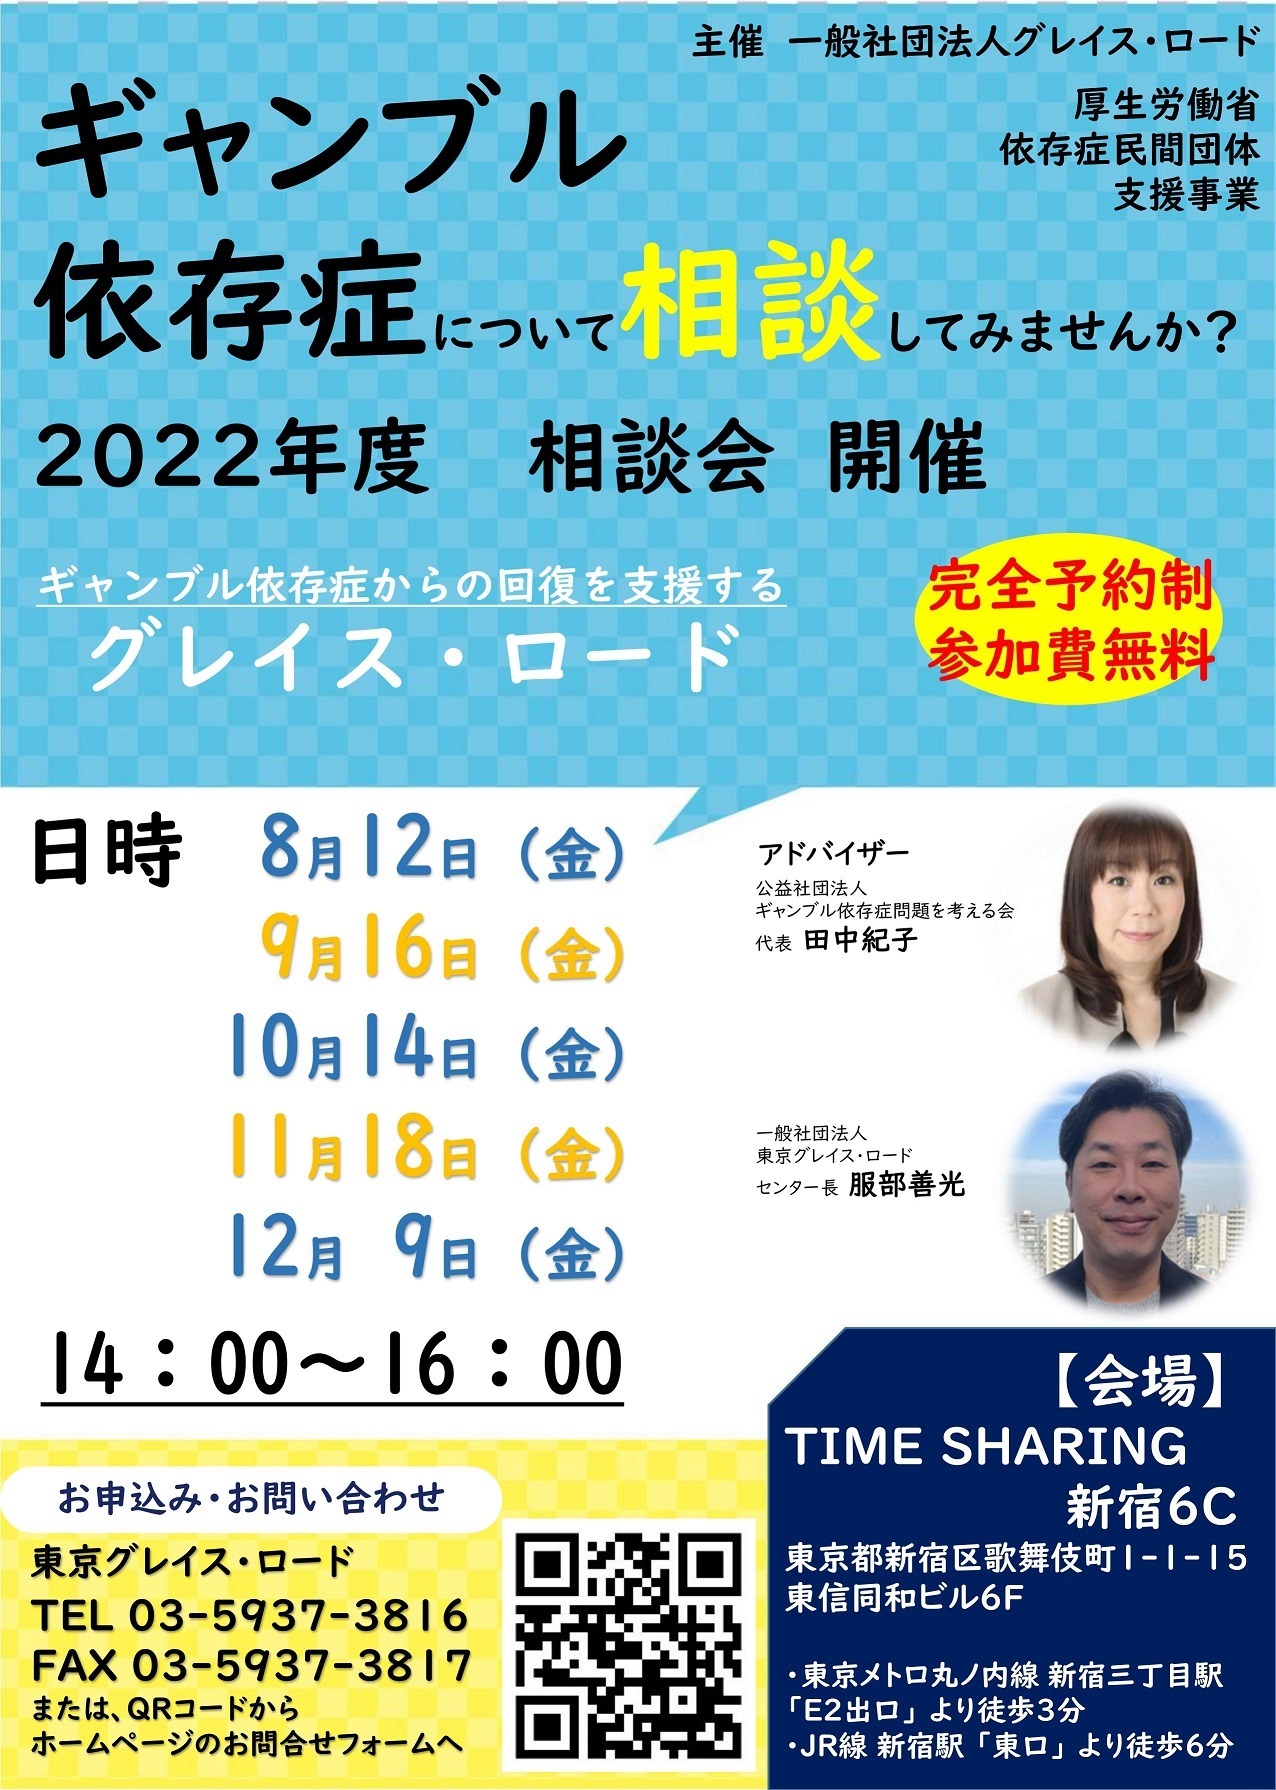 名古屋 新大阪 新幹線指定席回数券 12／24まで有効 3枚も可